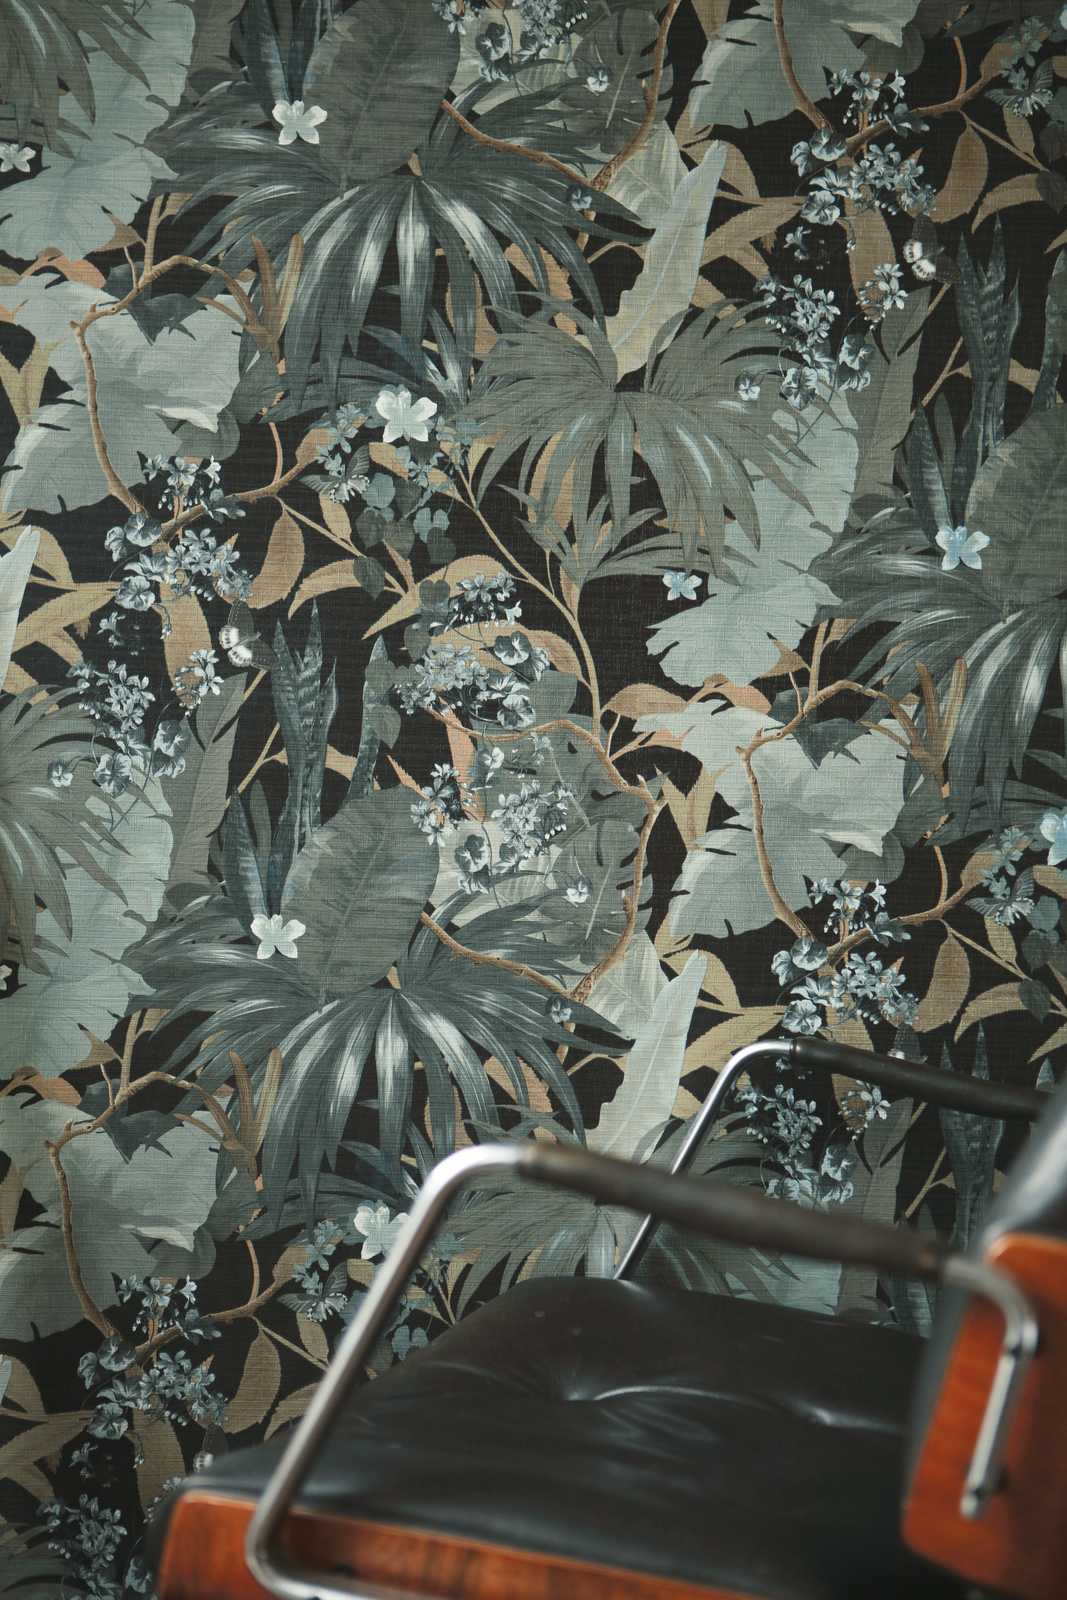             Tapete Dschungel Design mit Blättermuster – Grau, Grün
        